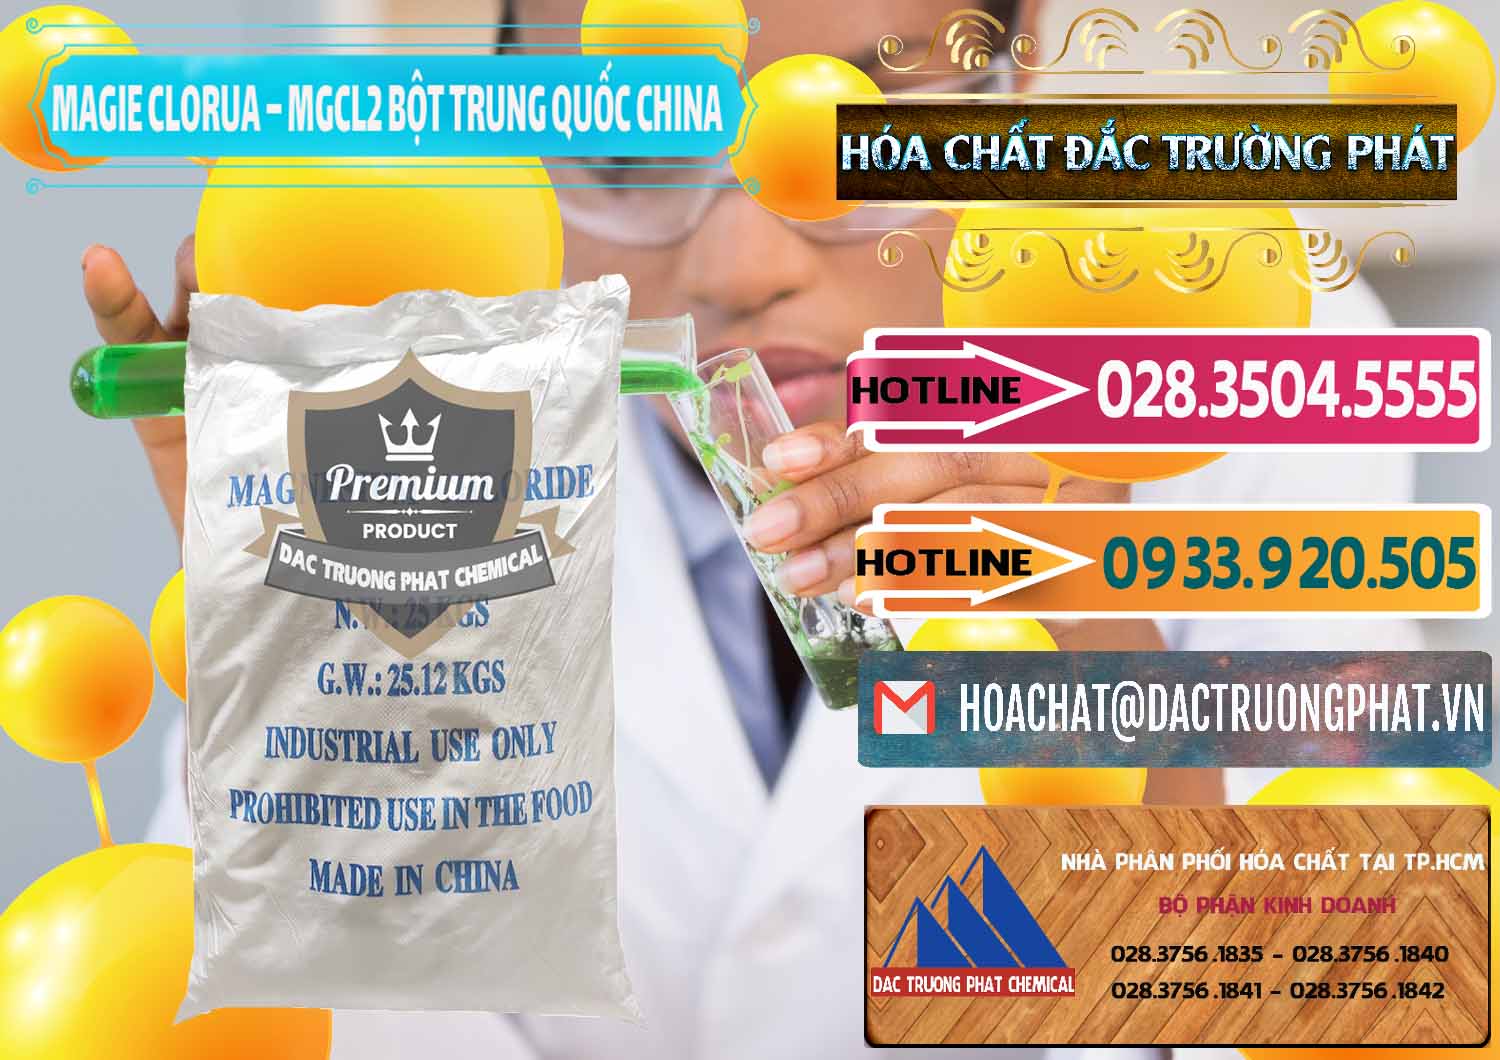 Cty bán ( cung cấp ) Magie Clorua – MGCL2 96% Dạng Bột Bao Chữ Xanh Trung Quốc China - 0207 - Công ty nhập khẩu & cung cấp hóa chất tại TP.HCM - dactruongphat.vn